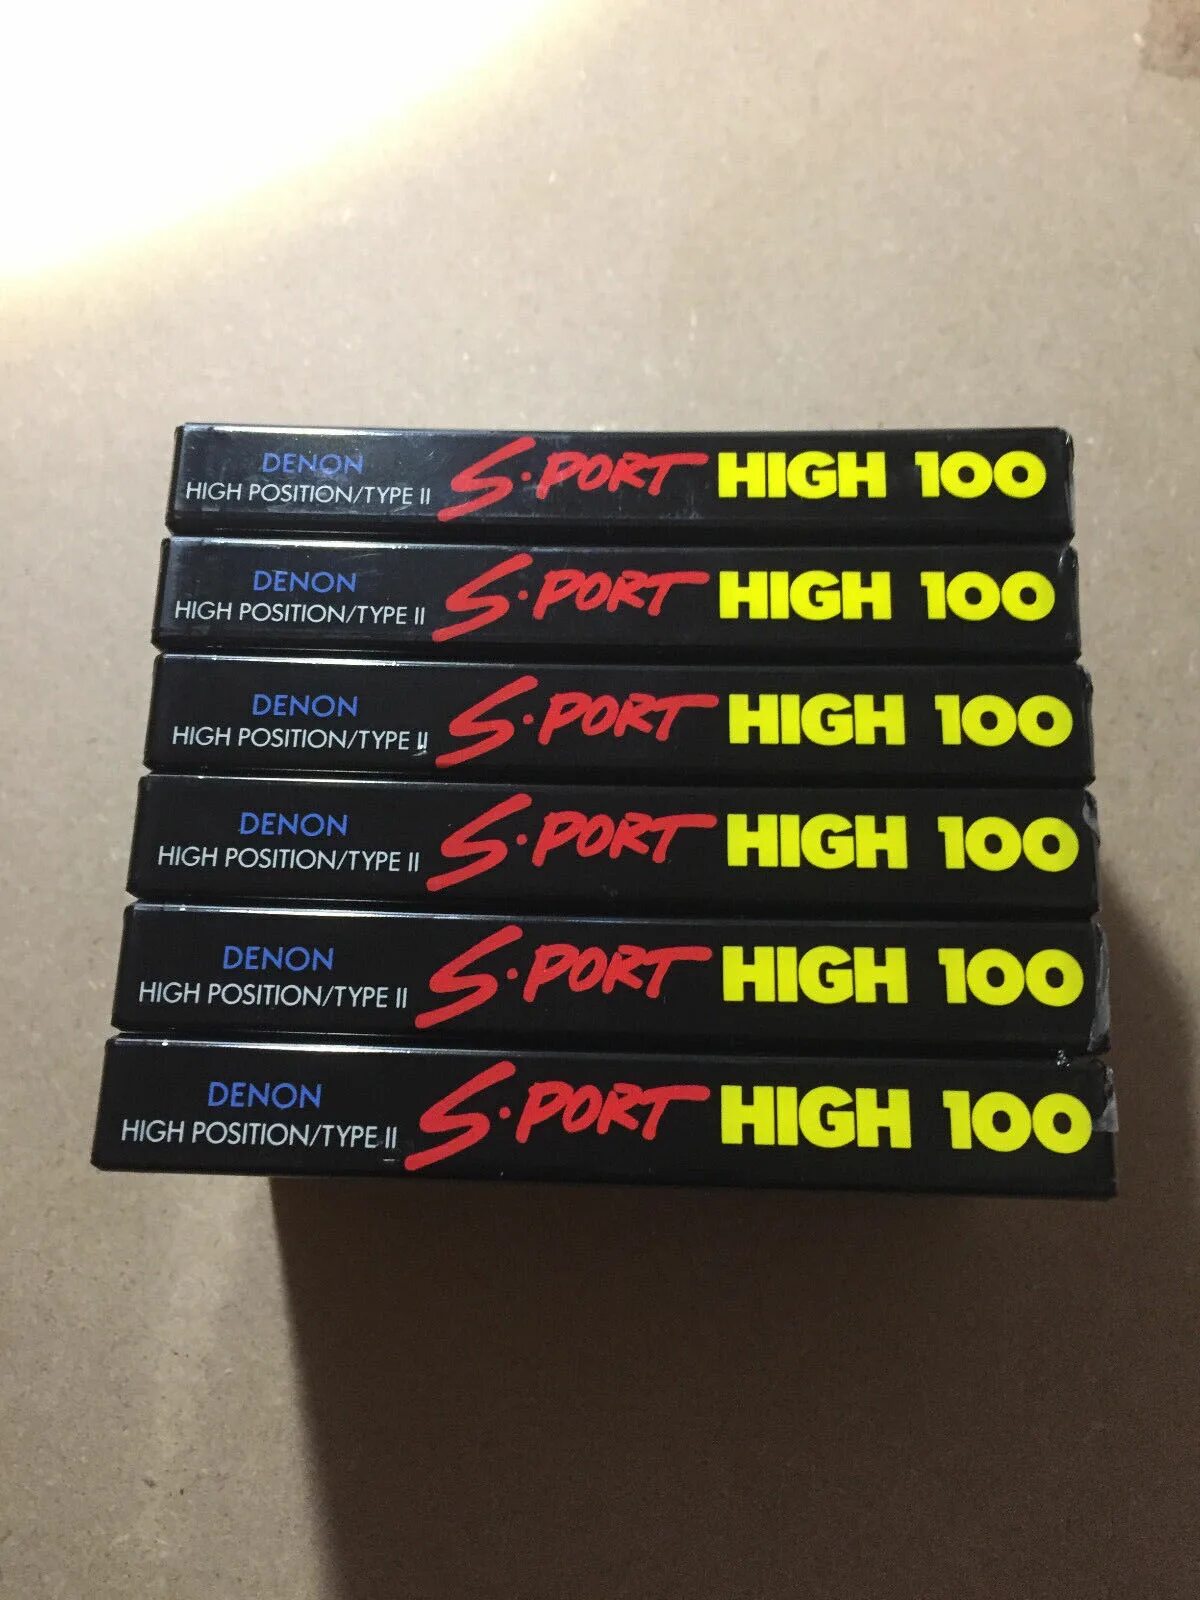 Кассета 100. Denon Sport аудиокассета. Denon s Port 100 кассеты. ФС-100 кассета. Дренажная сотая кассета.